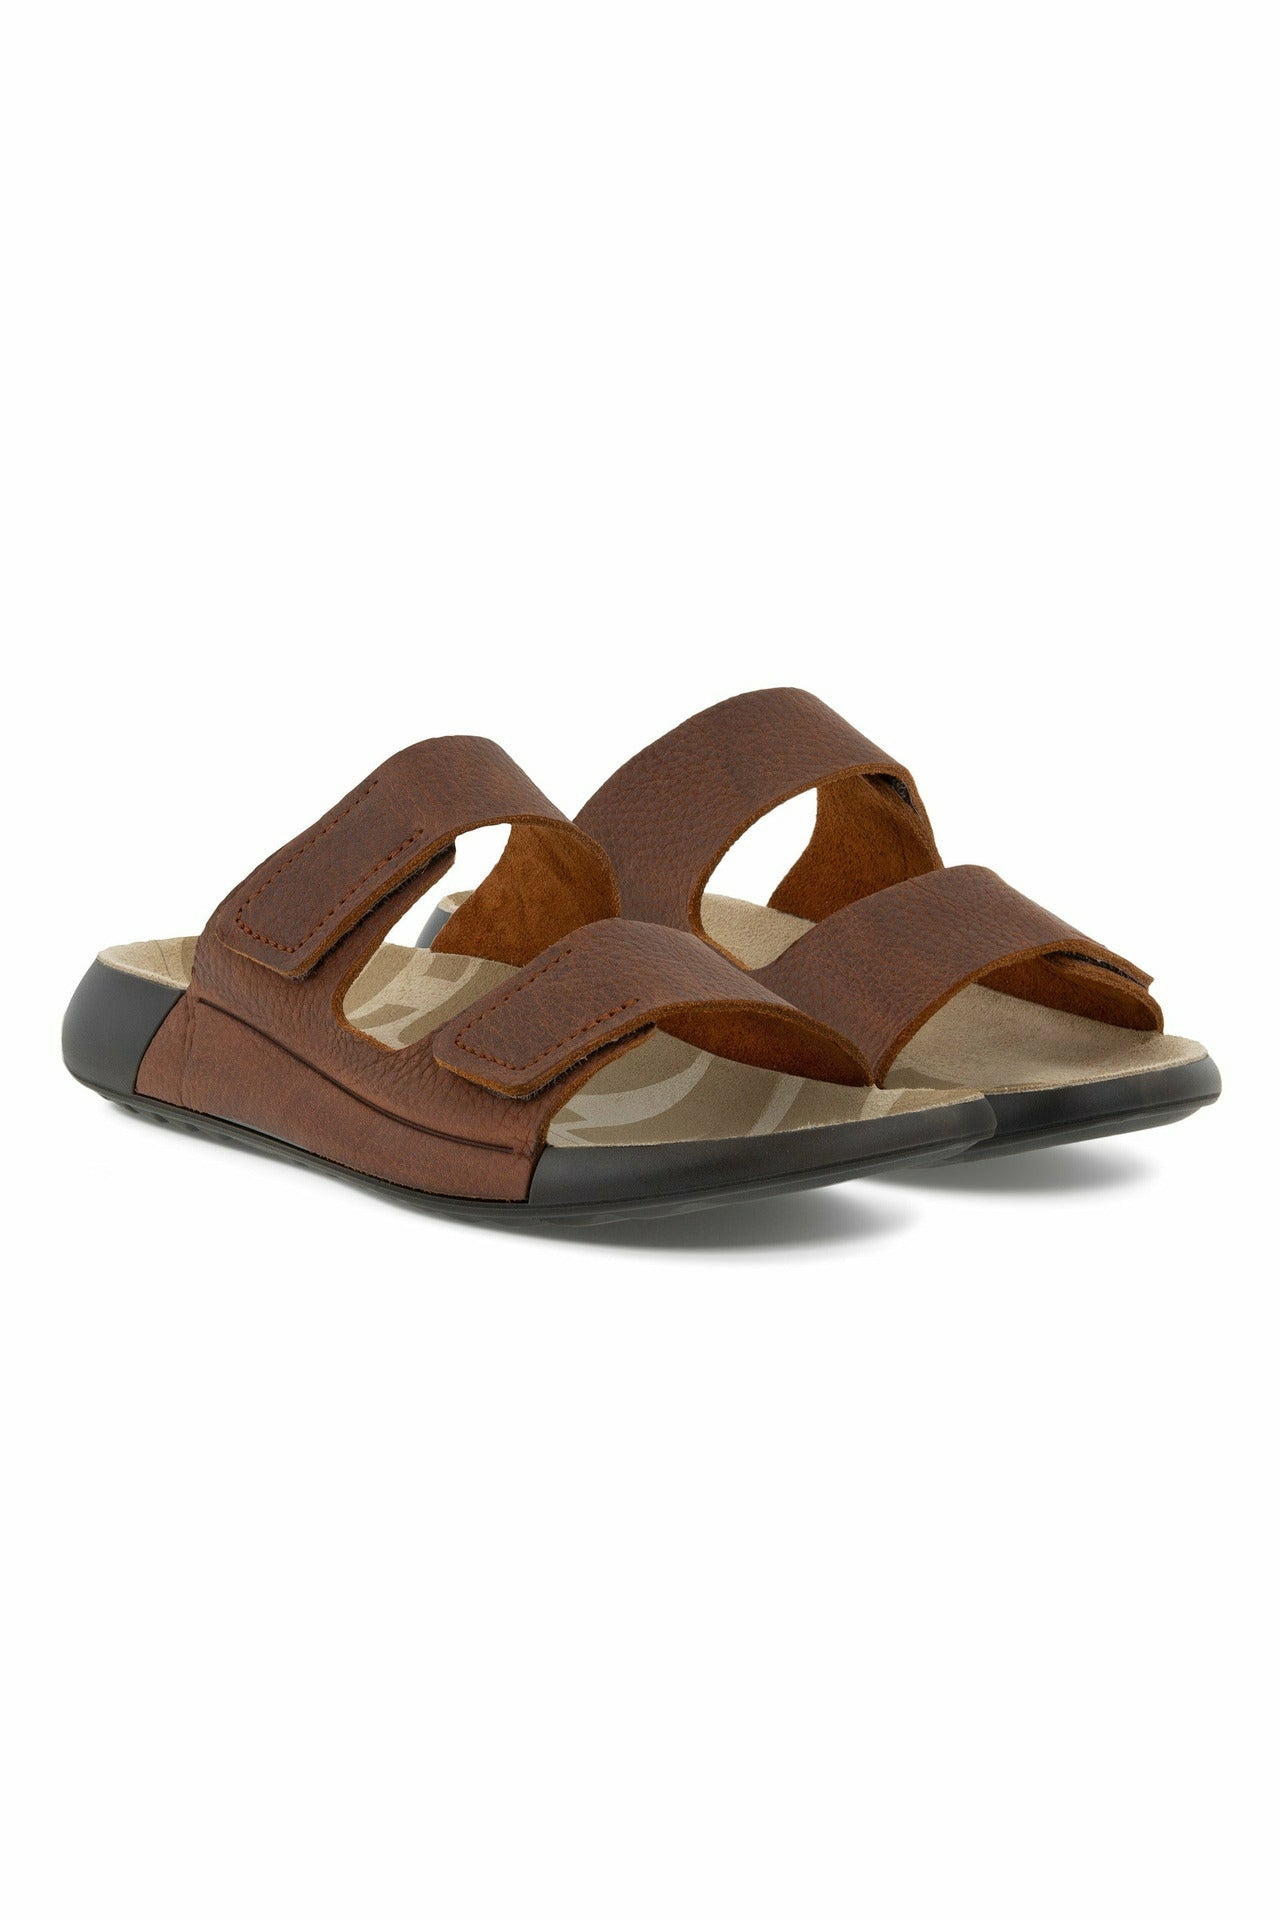 ECCO Cozmo 500904-02178 mens sandal in brown